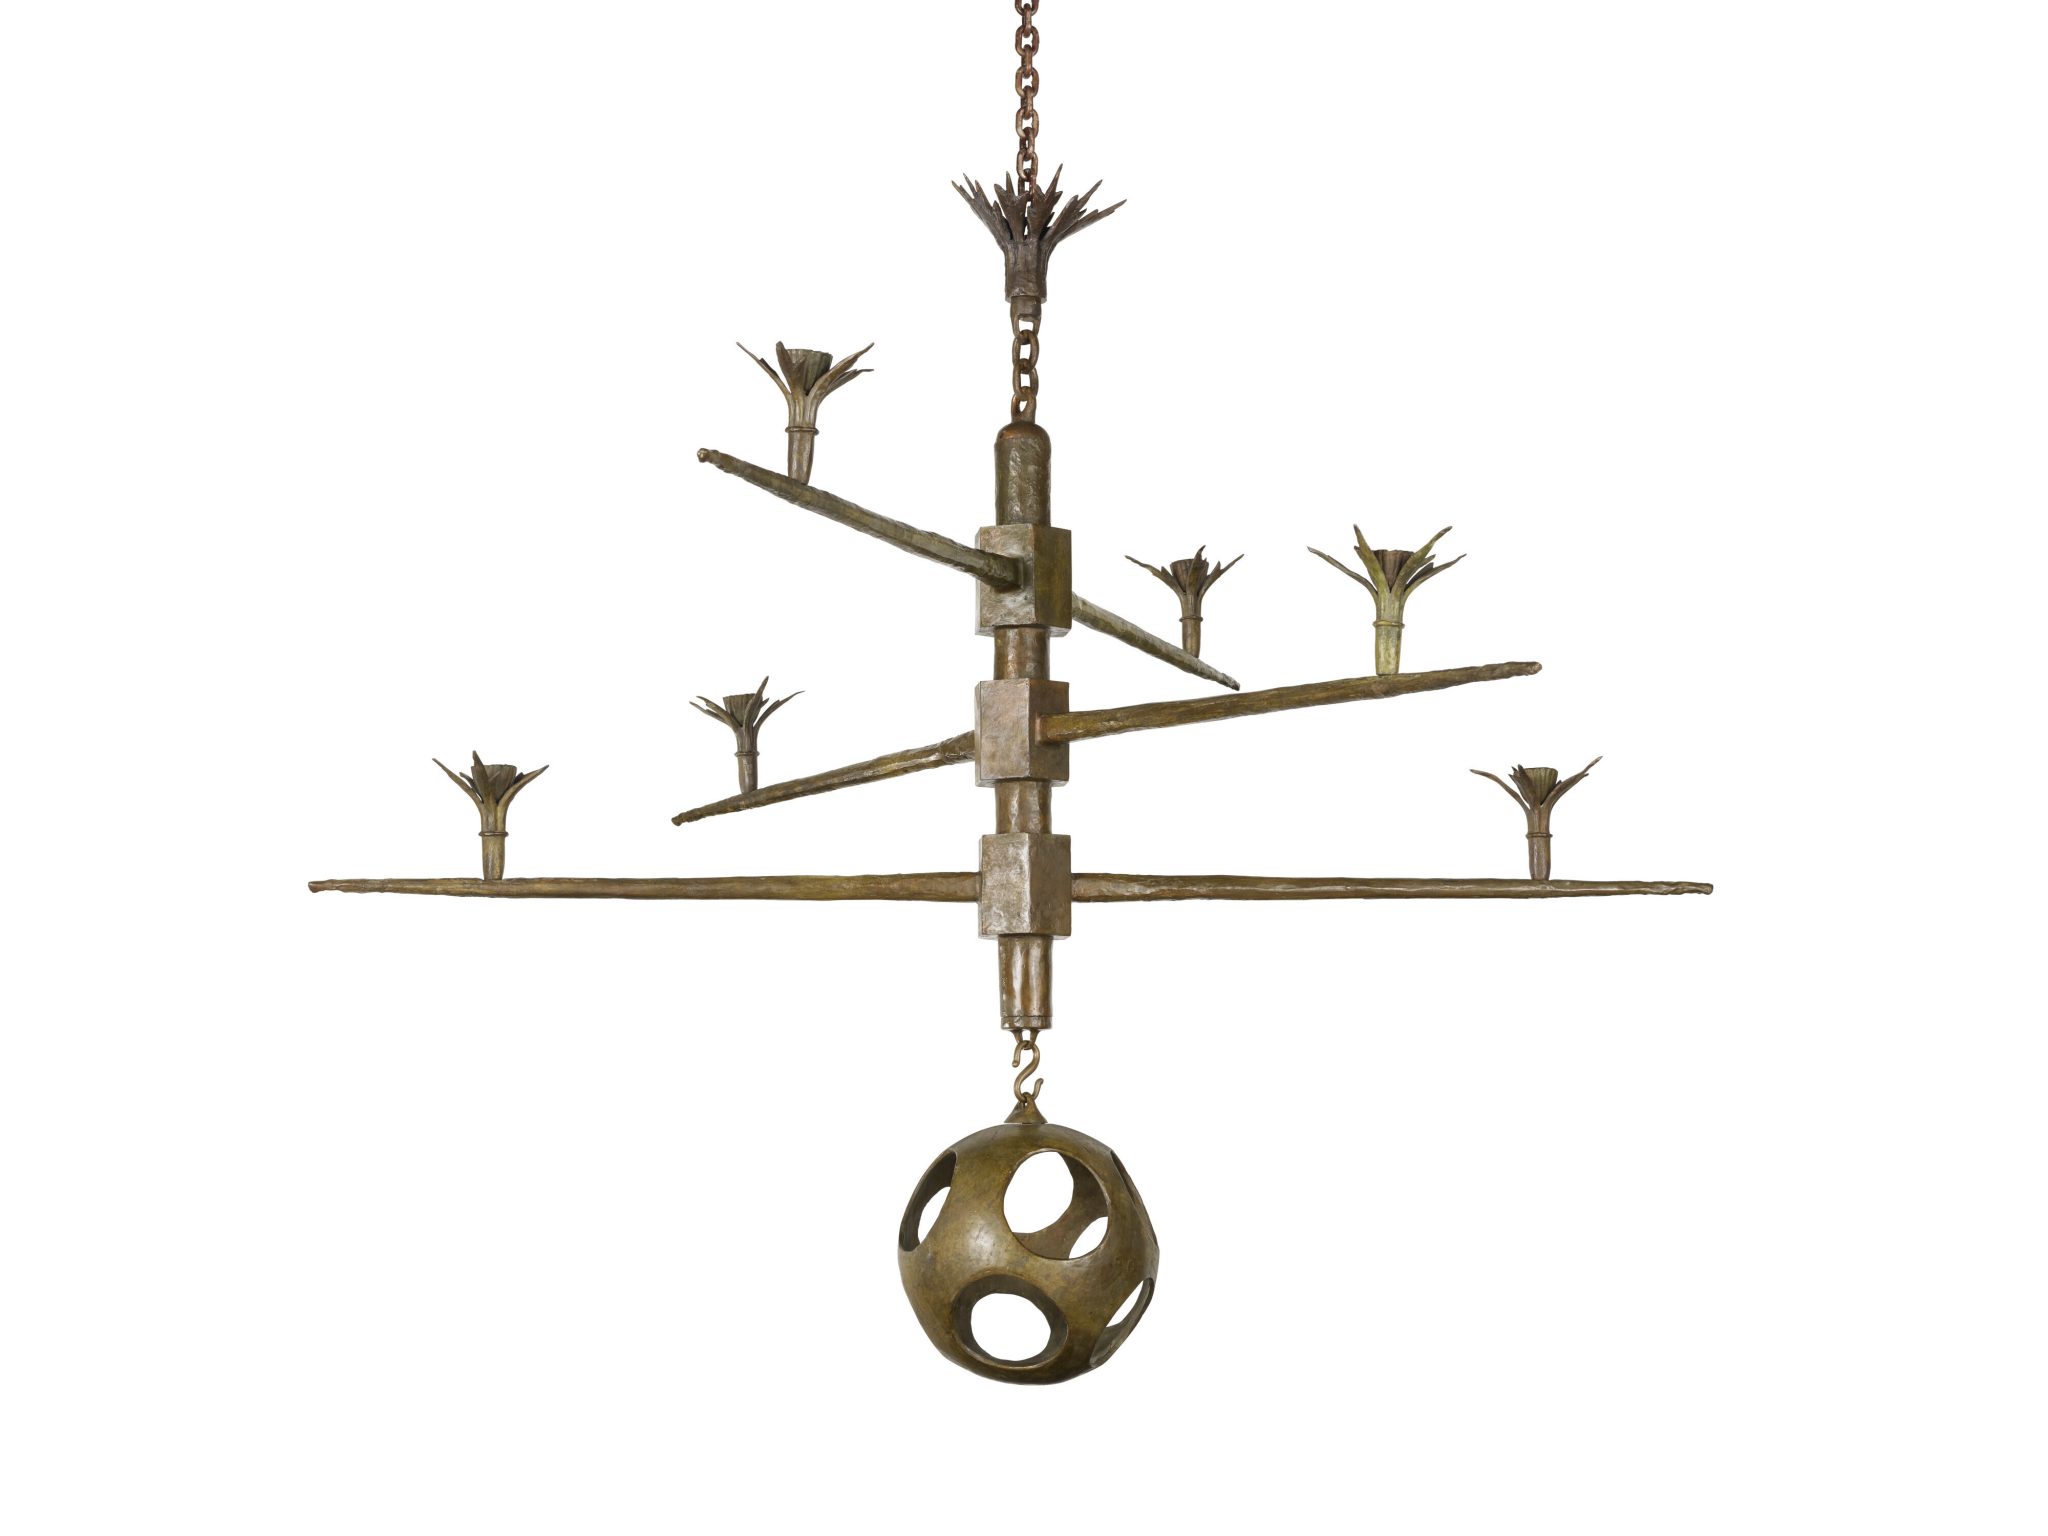 Un raro lampadario di Alberto Giacometti acquistato per £ 250, potrebbe essere venduto all’asta per £ 7 milioni